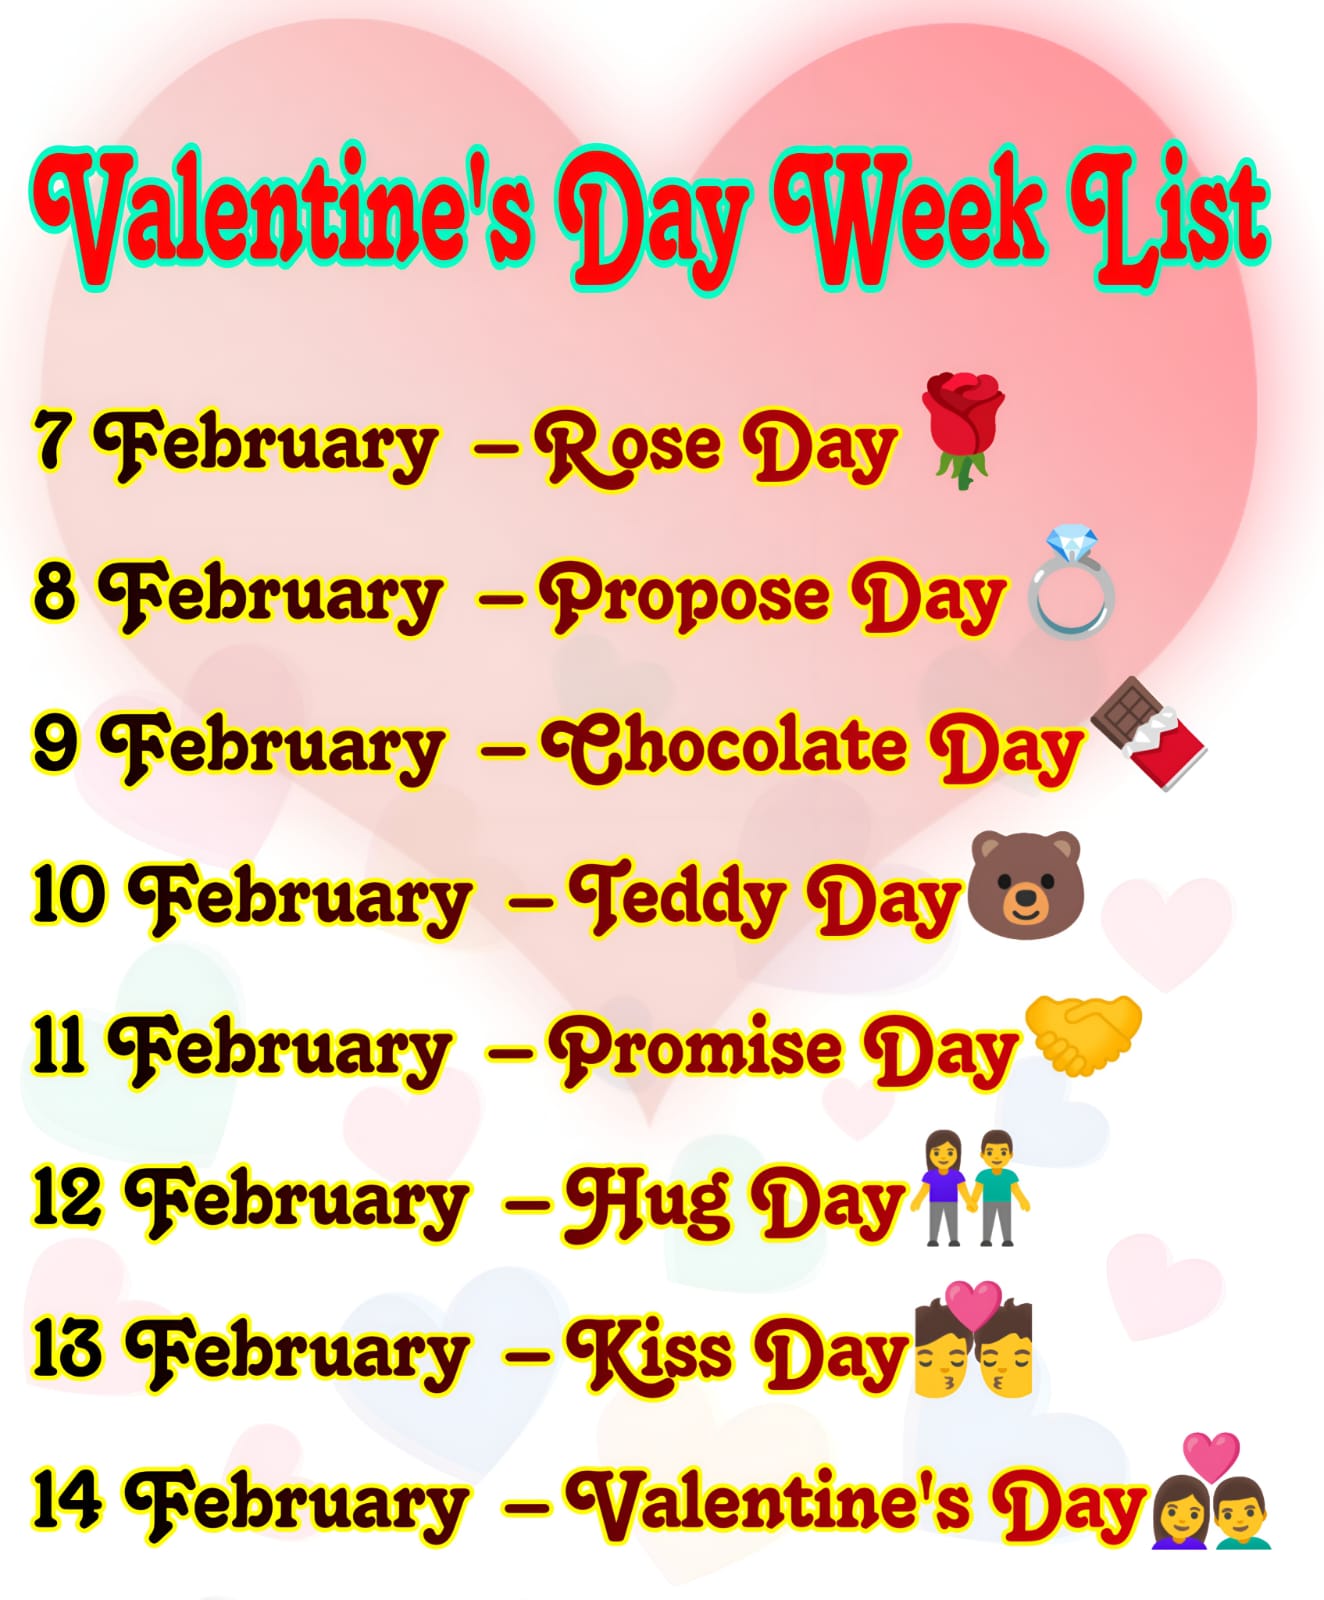 Valentine week days list image